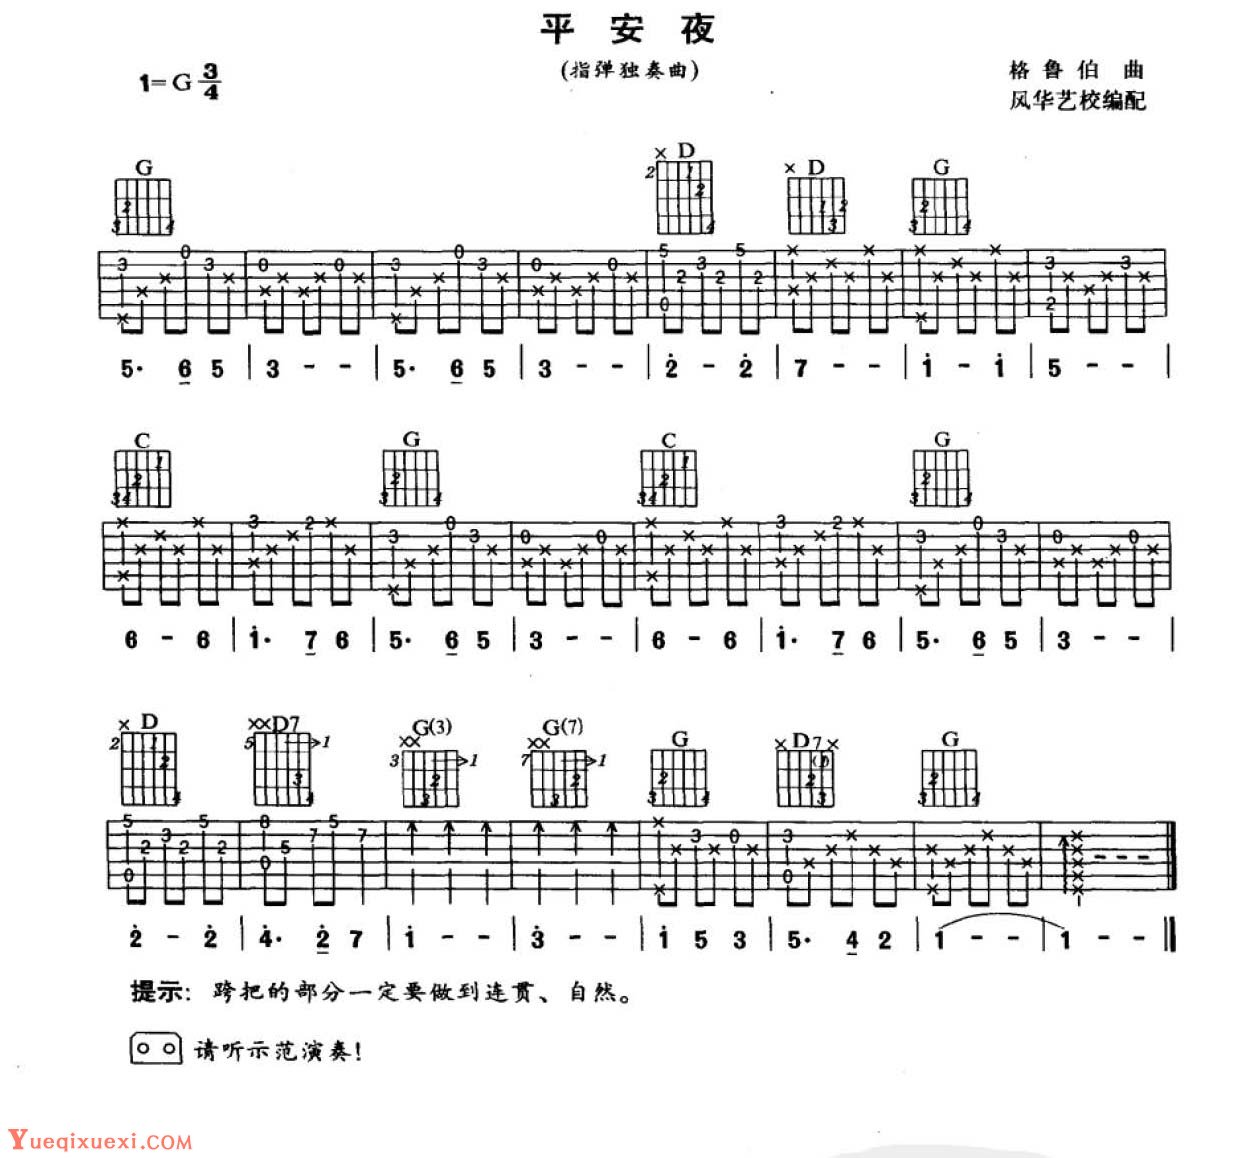 平安夜吉他谱(PDF谱,指弹)_群星(Various Artists)